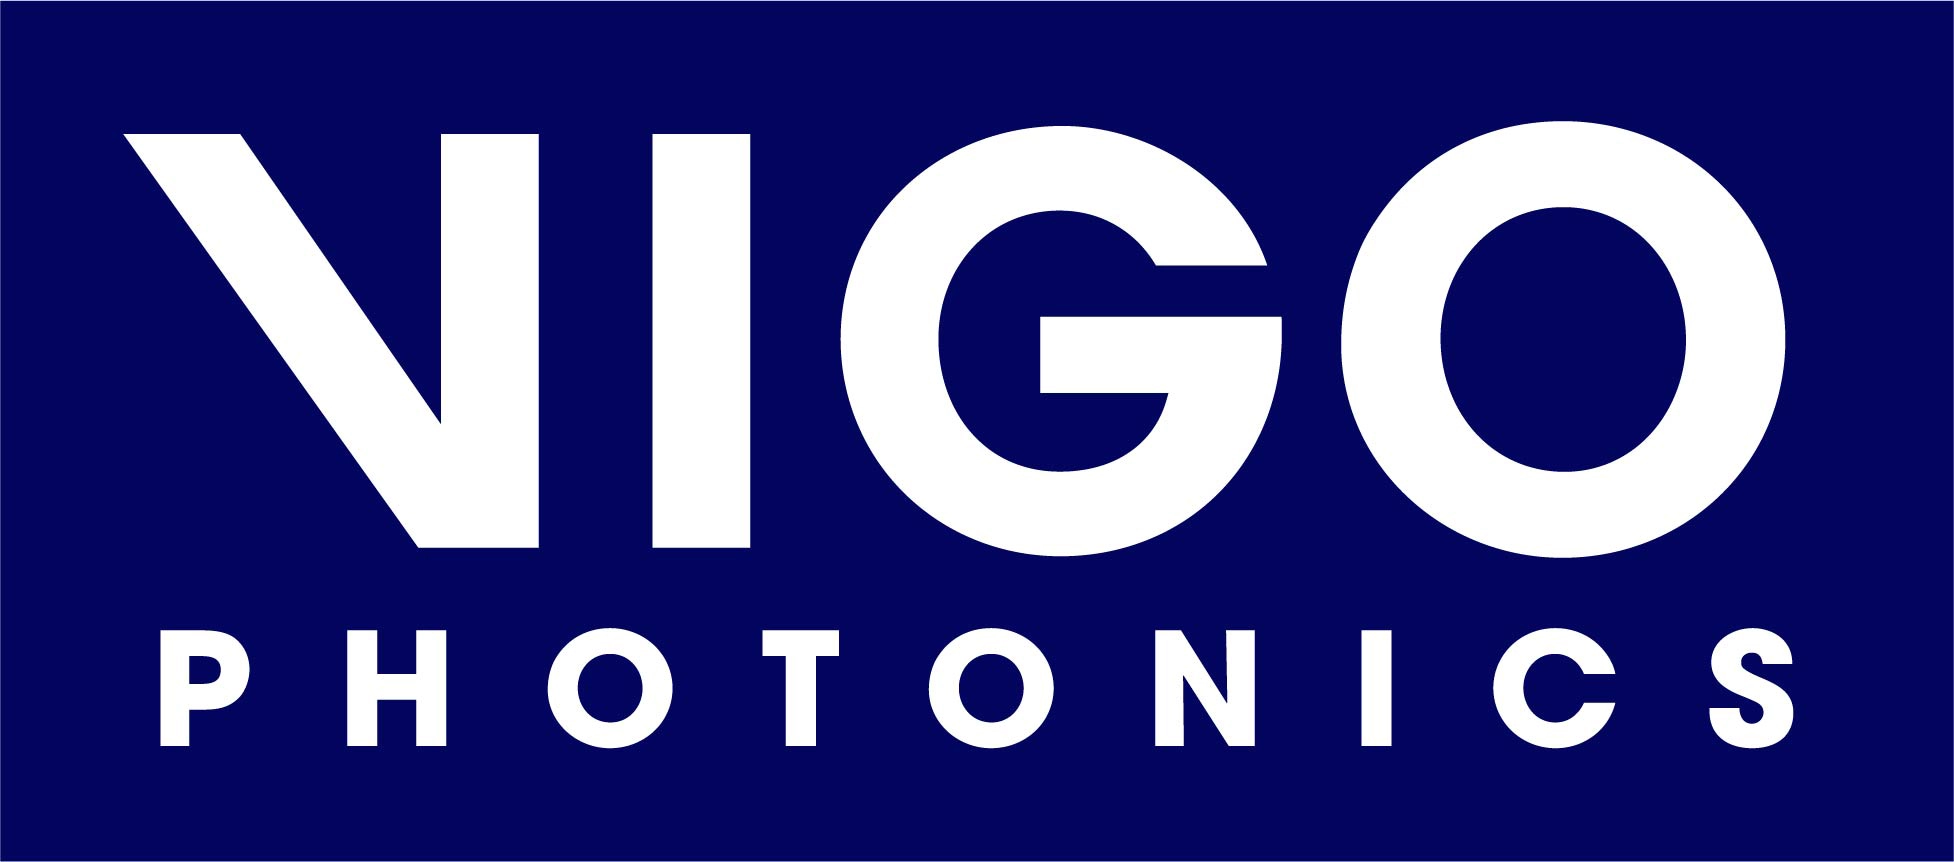 VIGO PHOTONICS S.A. (VIGO) - logo